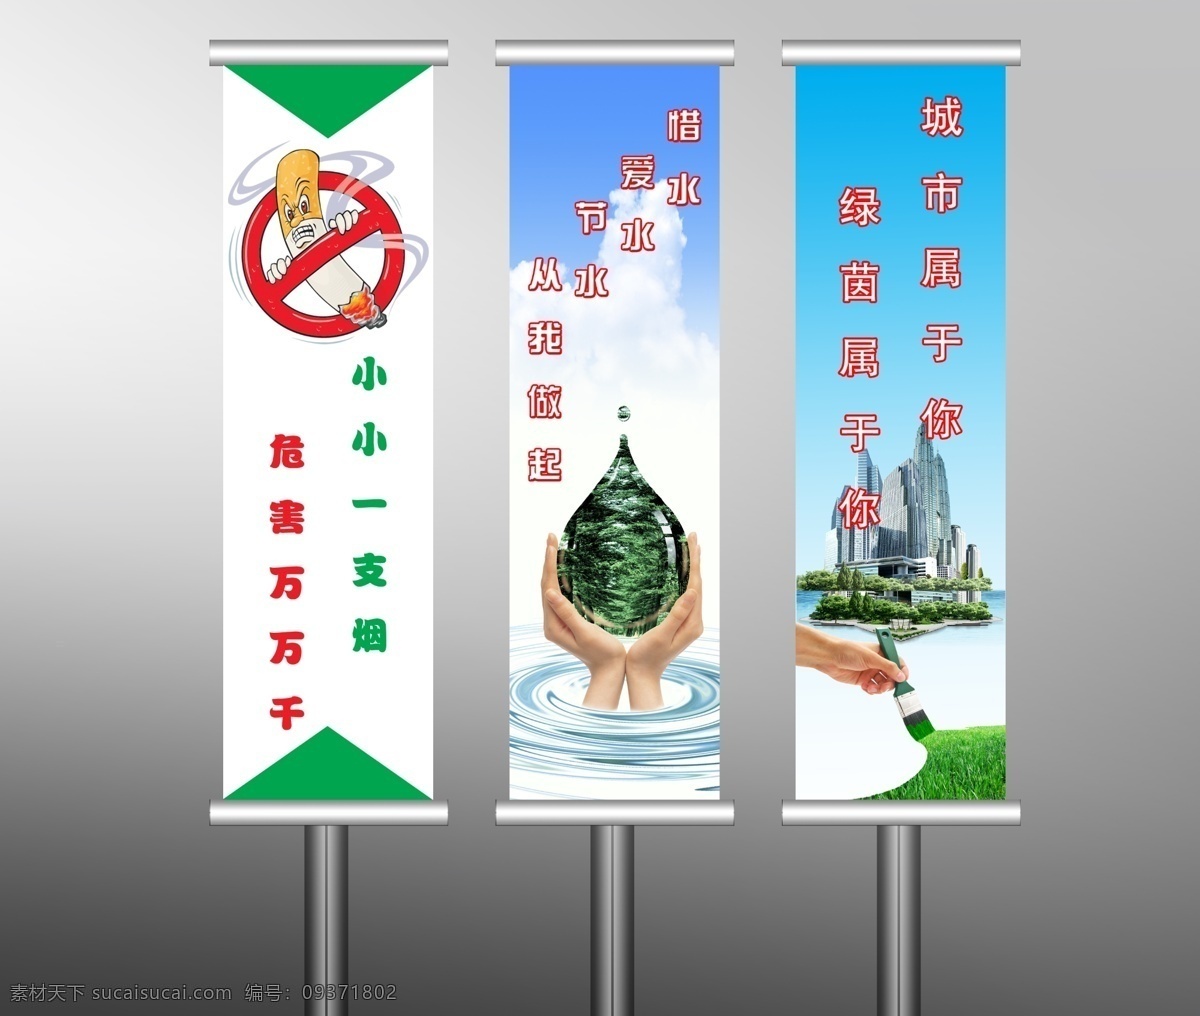 大海 地球 高楼 广告设计模板 建筑 节约用水 绿化环境 手 户外刀旗广告 吸烟有害健康 树 油漆 展板模板 源文件 公益展板设计